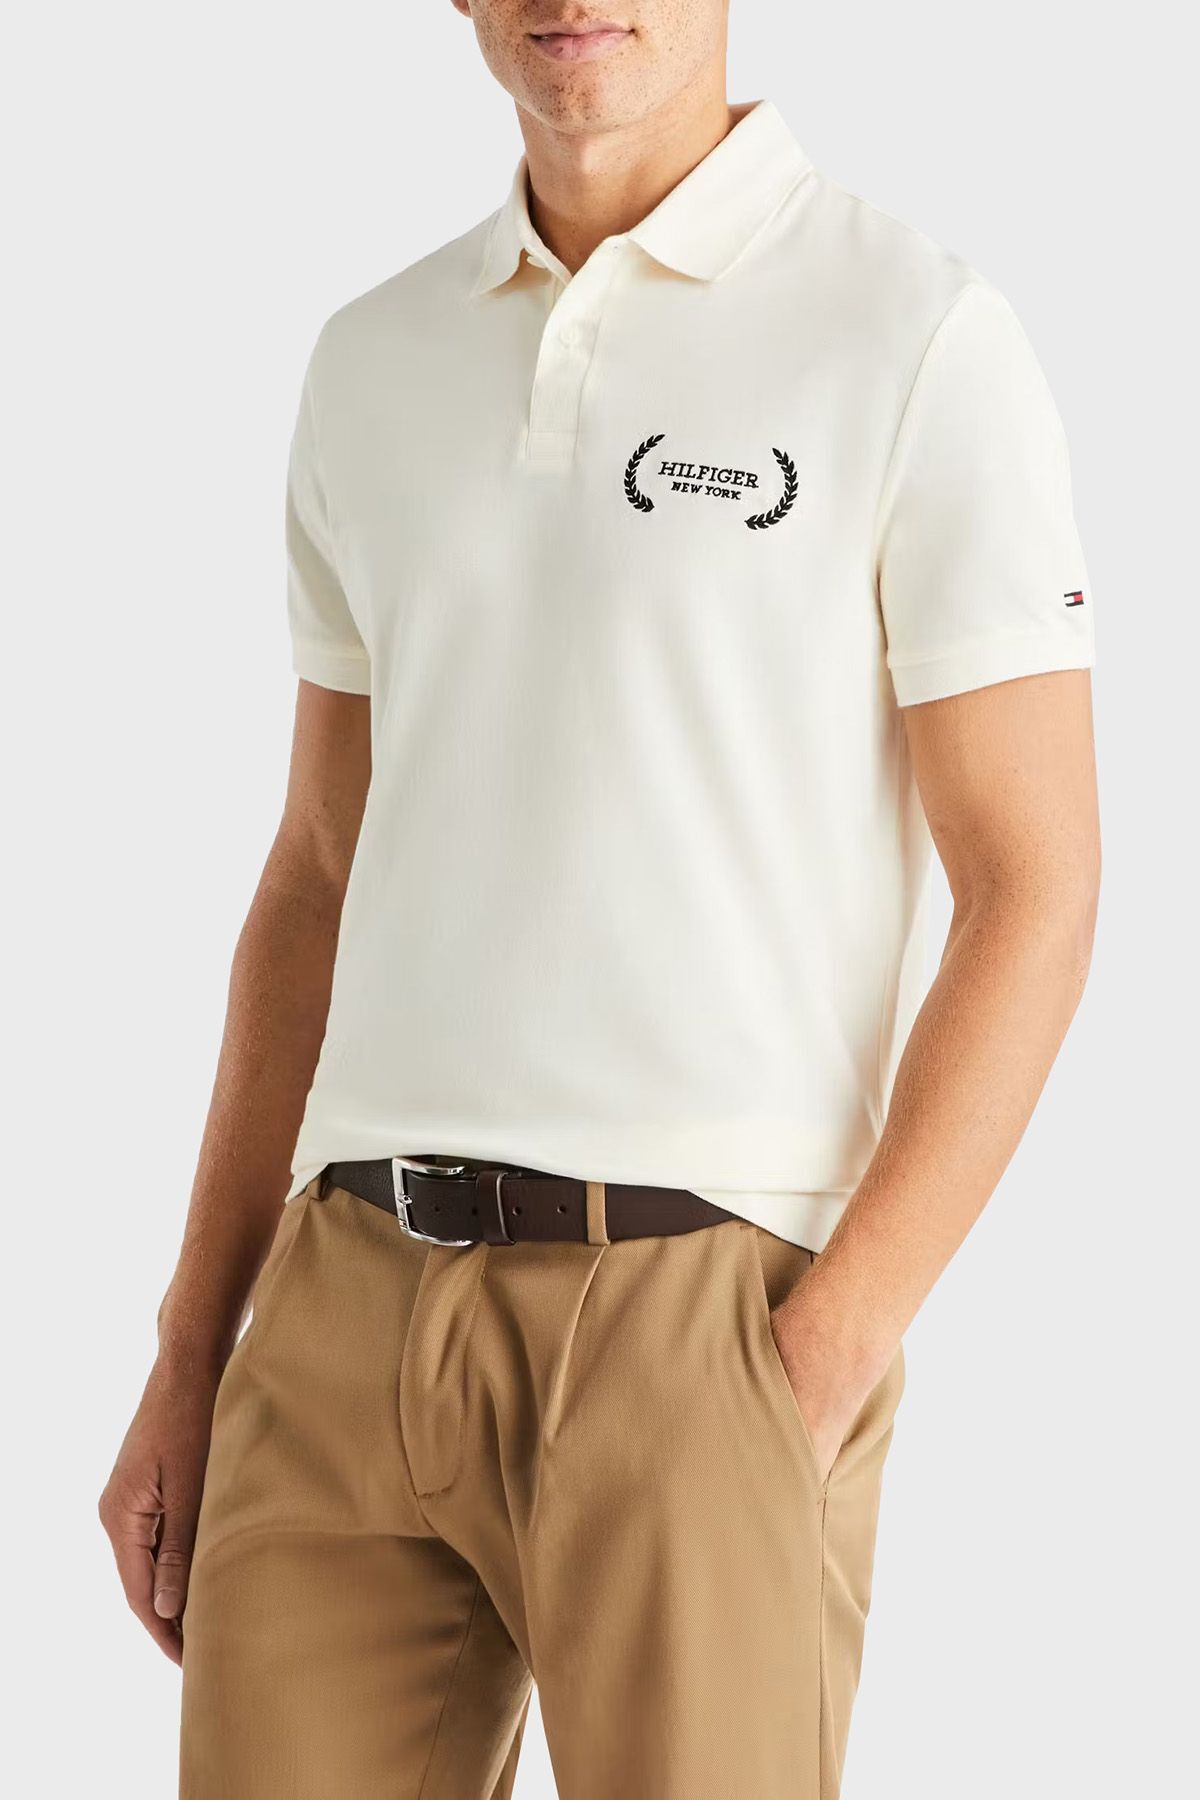 Tommy Hilfiger Erkek Polo Yaka Düğme Kapamalı Kısa Kollu Bej Polo Yaka T-Shirt MW0MW33582-AEF